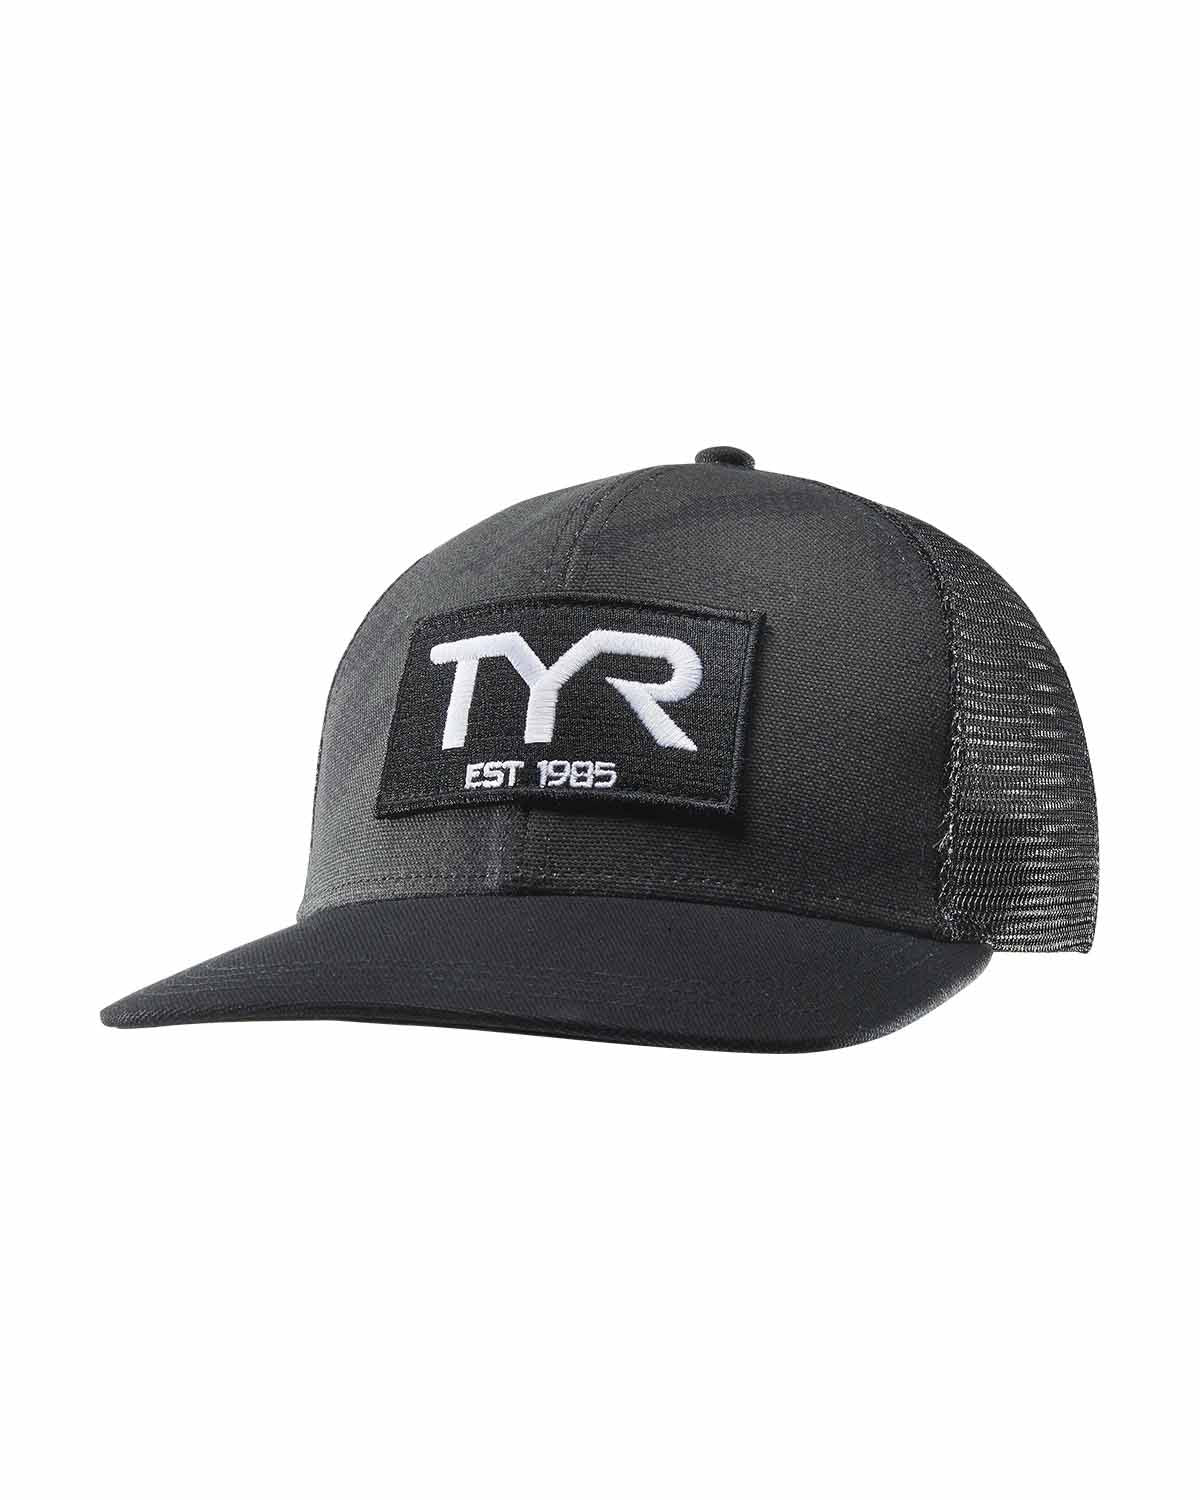 TYR Est. '85 Trucker Hat - Solid / Camo